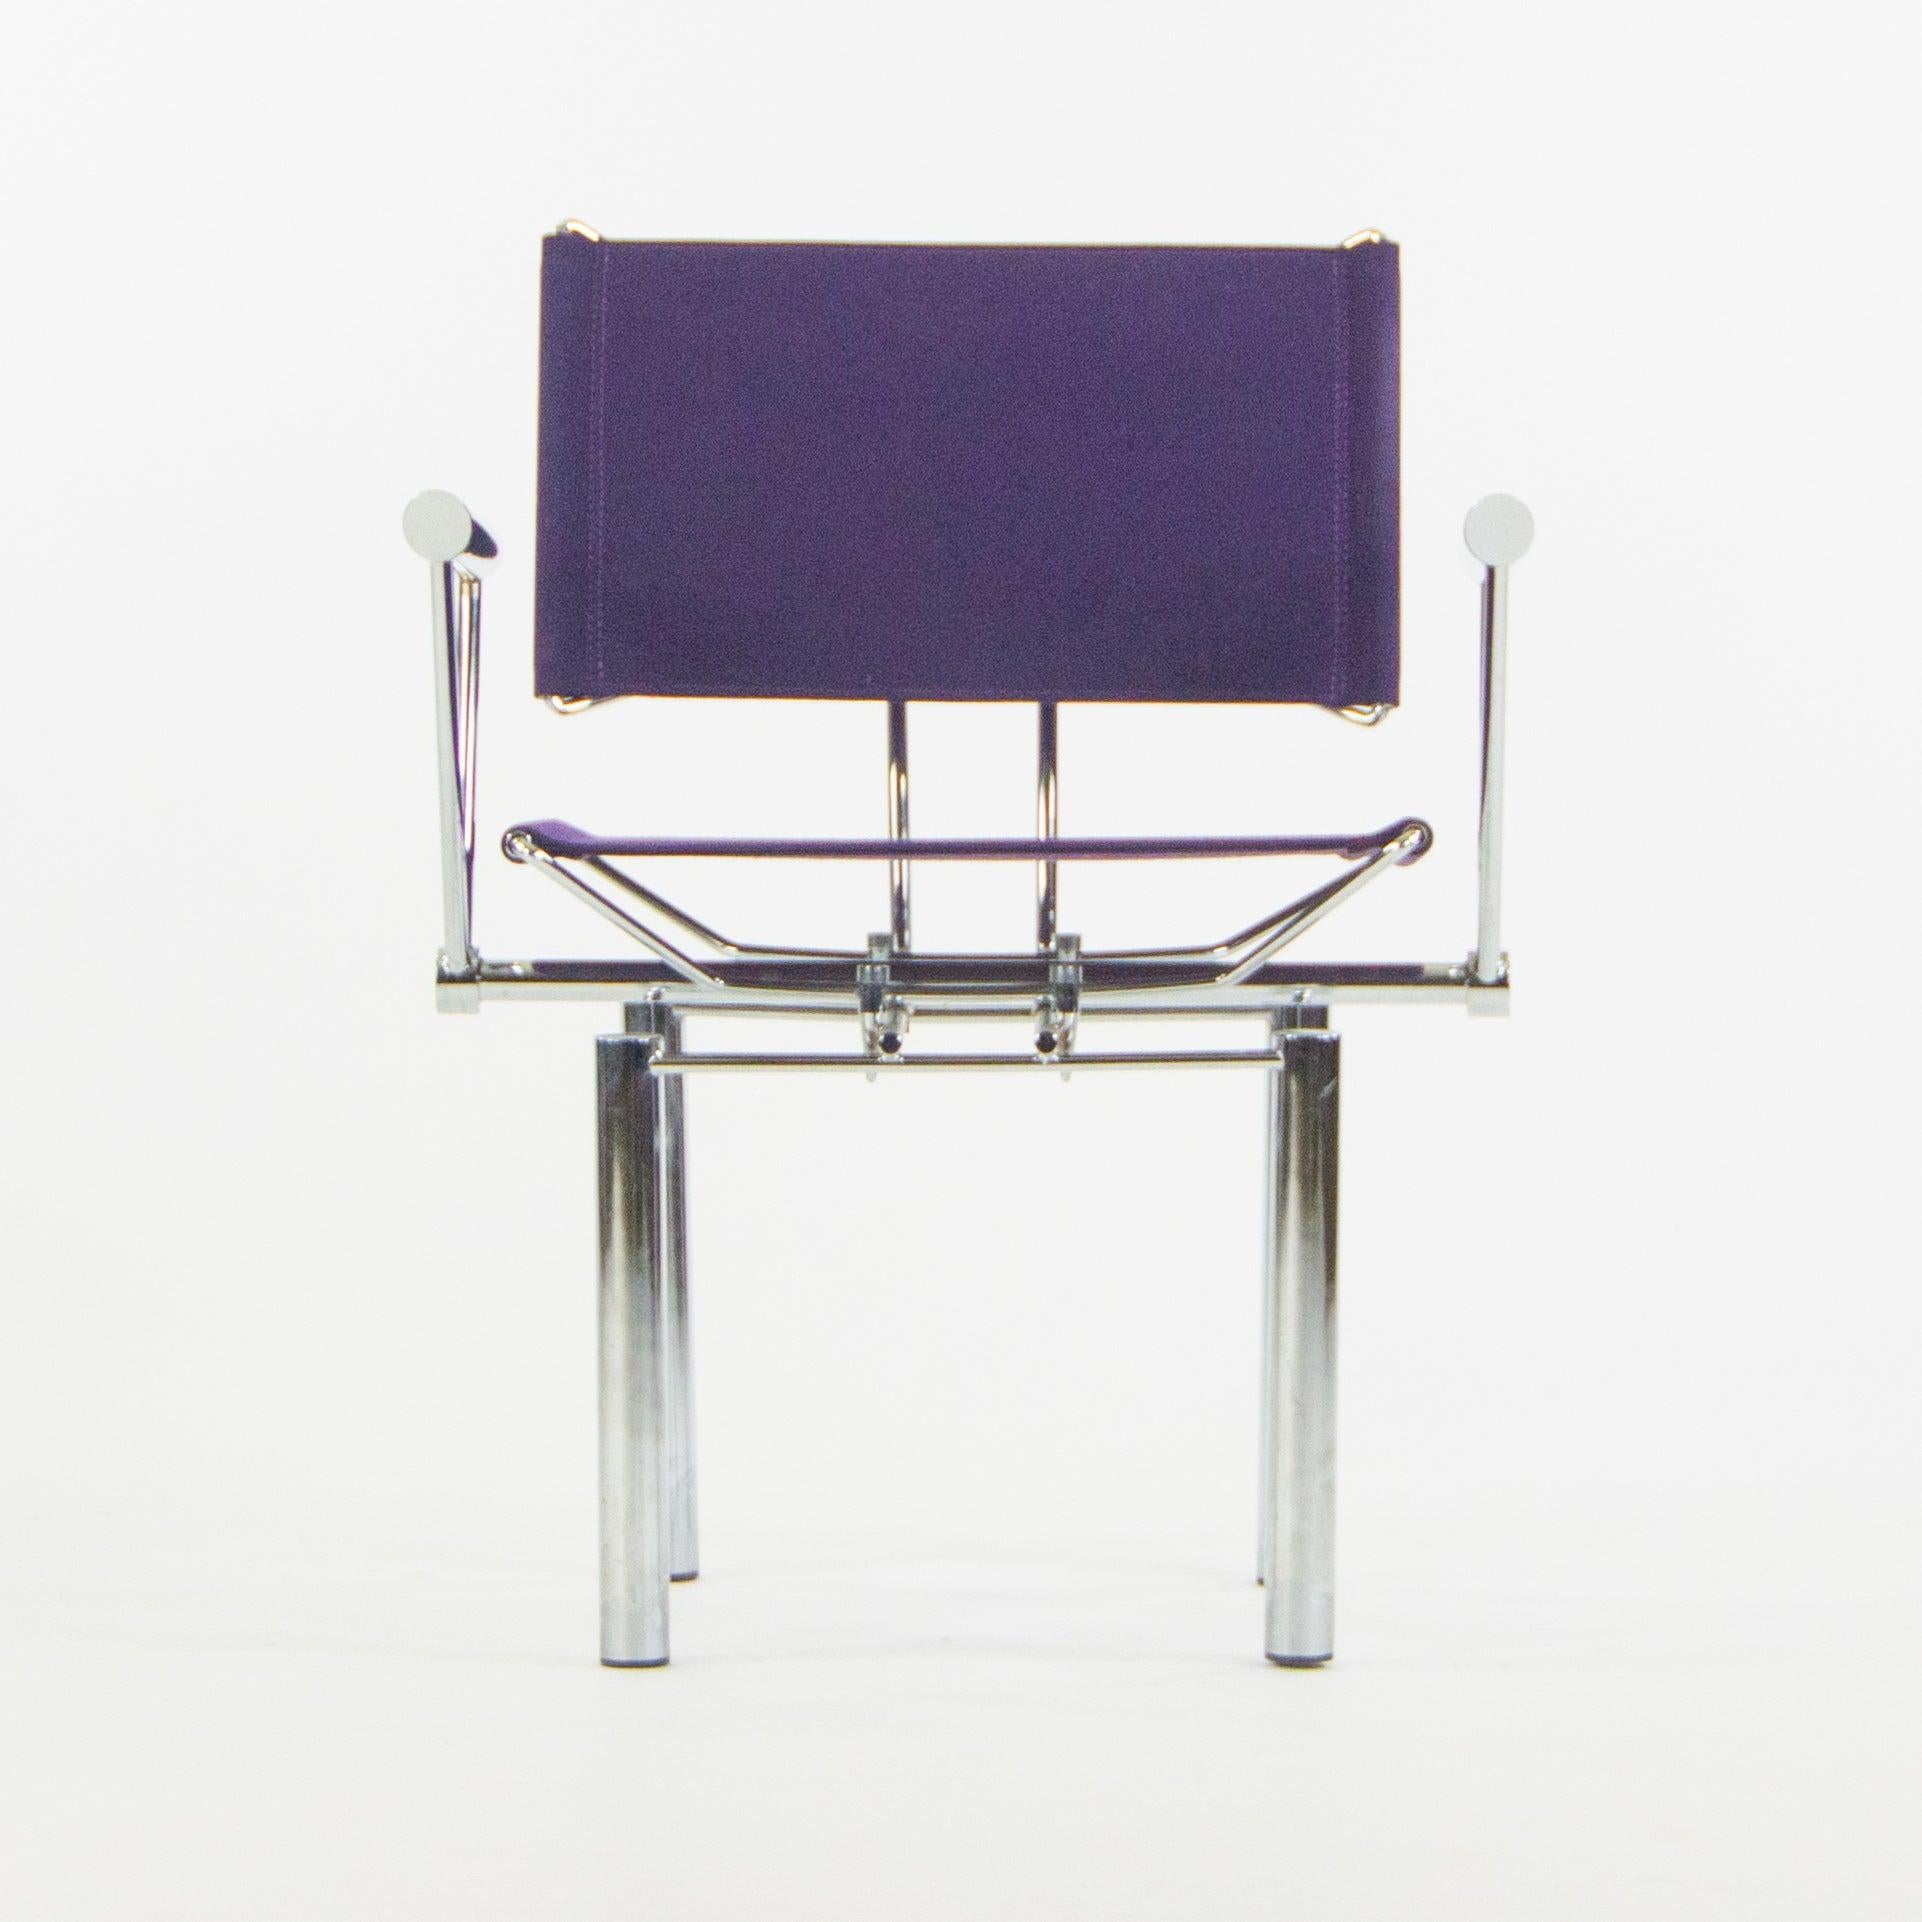 Zum Verkauf steht ein Paar lila Stoff-Esszimmerstühle aus der Serie 8600 von Hans Ullrich Bitsch für Kusch+Co. aus den 1980er Jahren. Sie sind aus wunderschönem verchromtem Stahl gefertigt und mit aufwendigen Details versehen. 
Sie erhalten genau